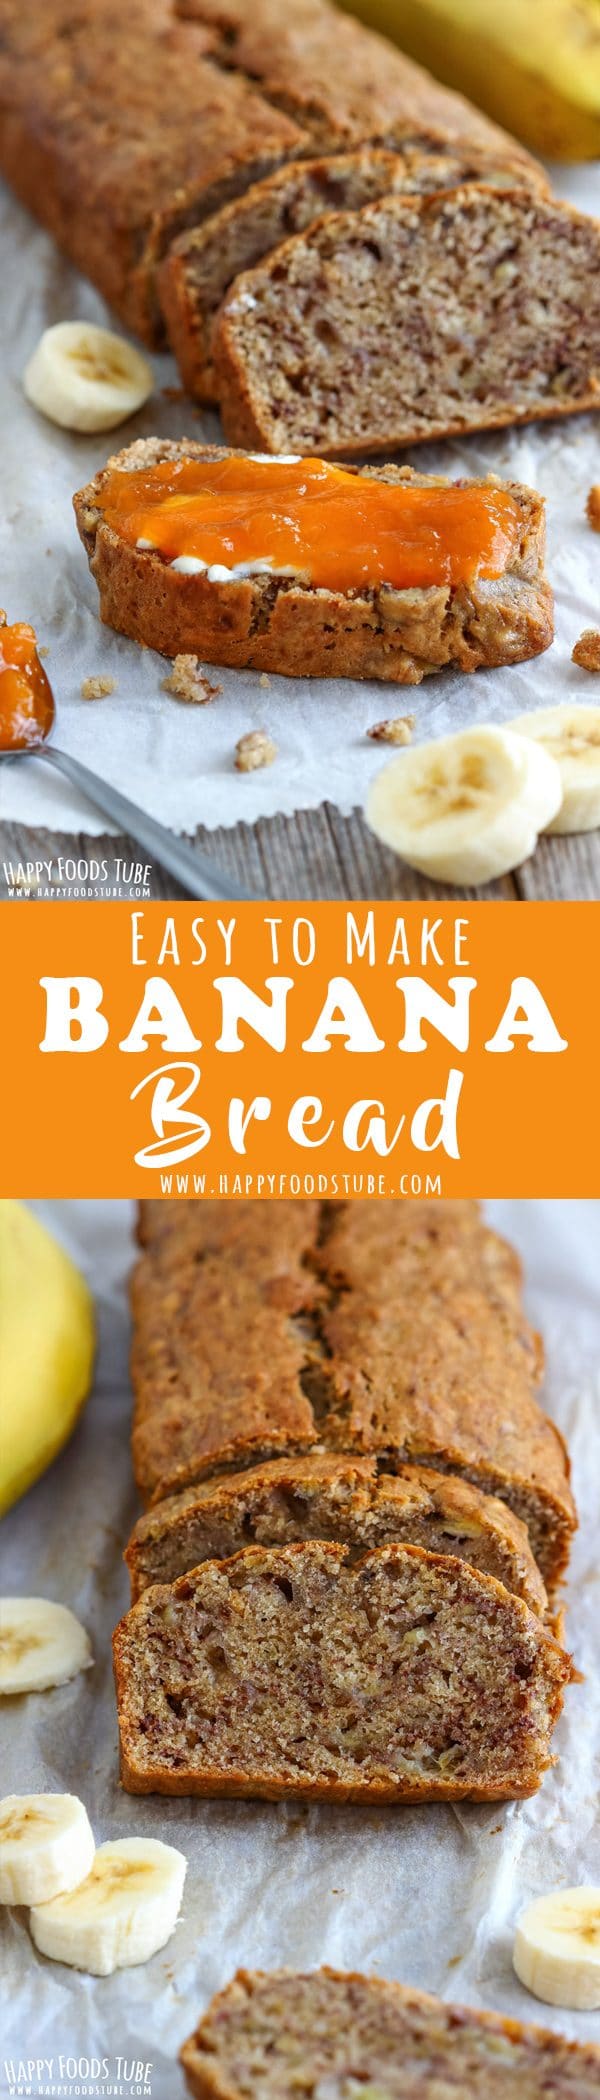 Banana Bread Recipe Picture